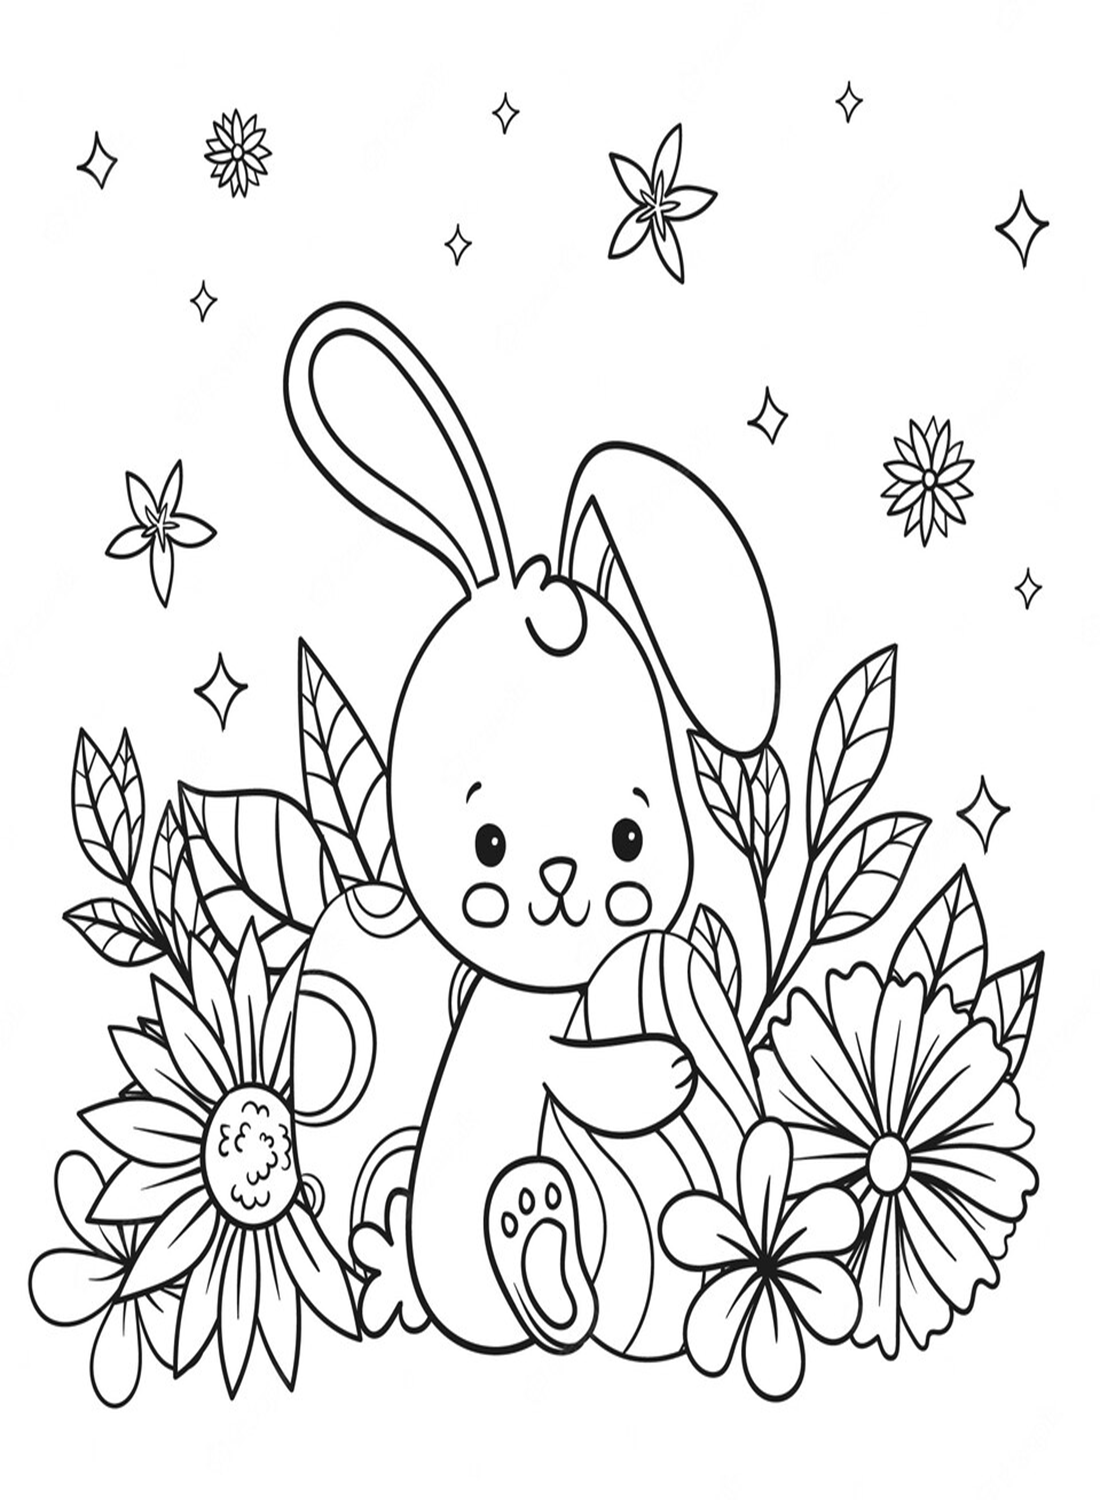 Cartoon konijn en paaseieren van konijn